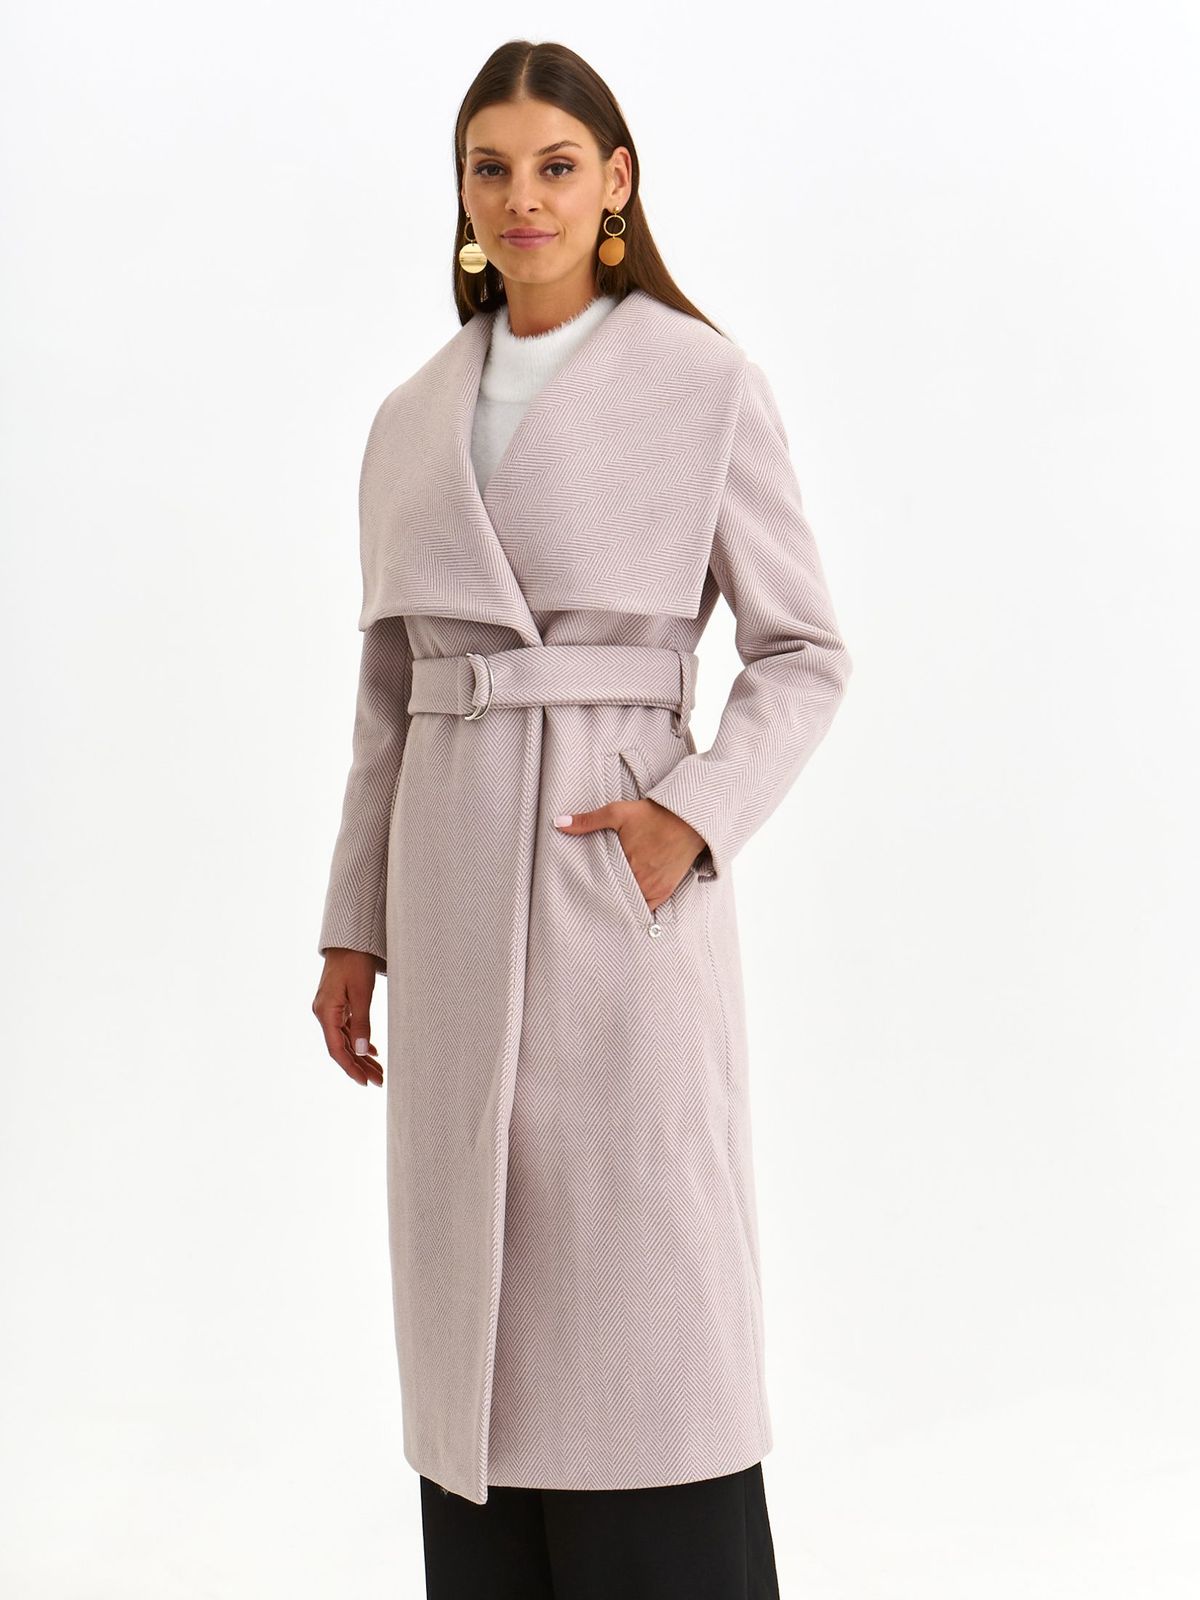 Palton din stofa roz deschis lung cu un croi drept accesorizat cu cordon si buzunare laterale - Top Secret